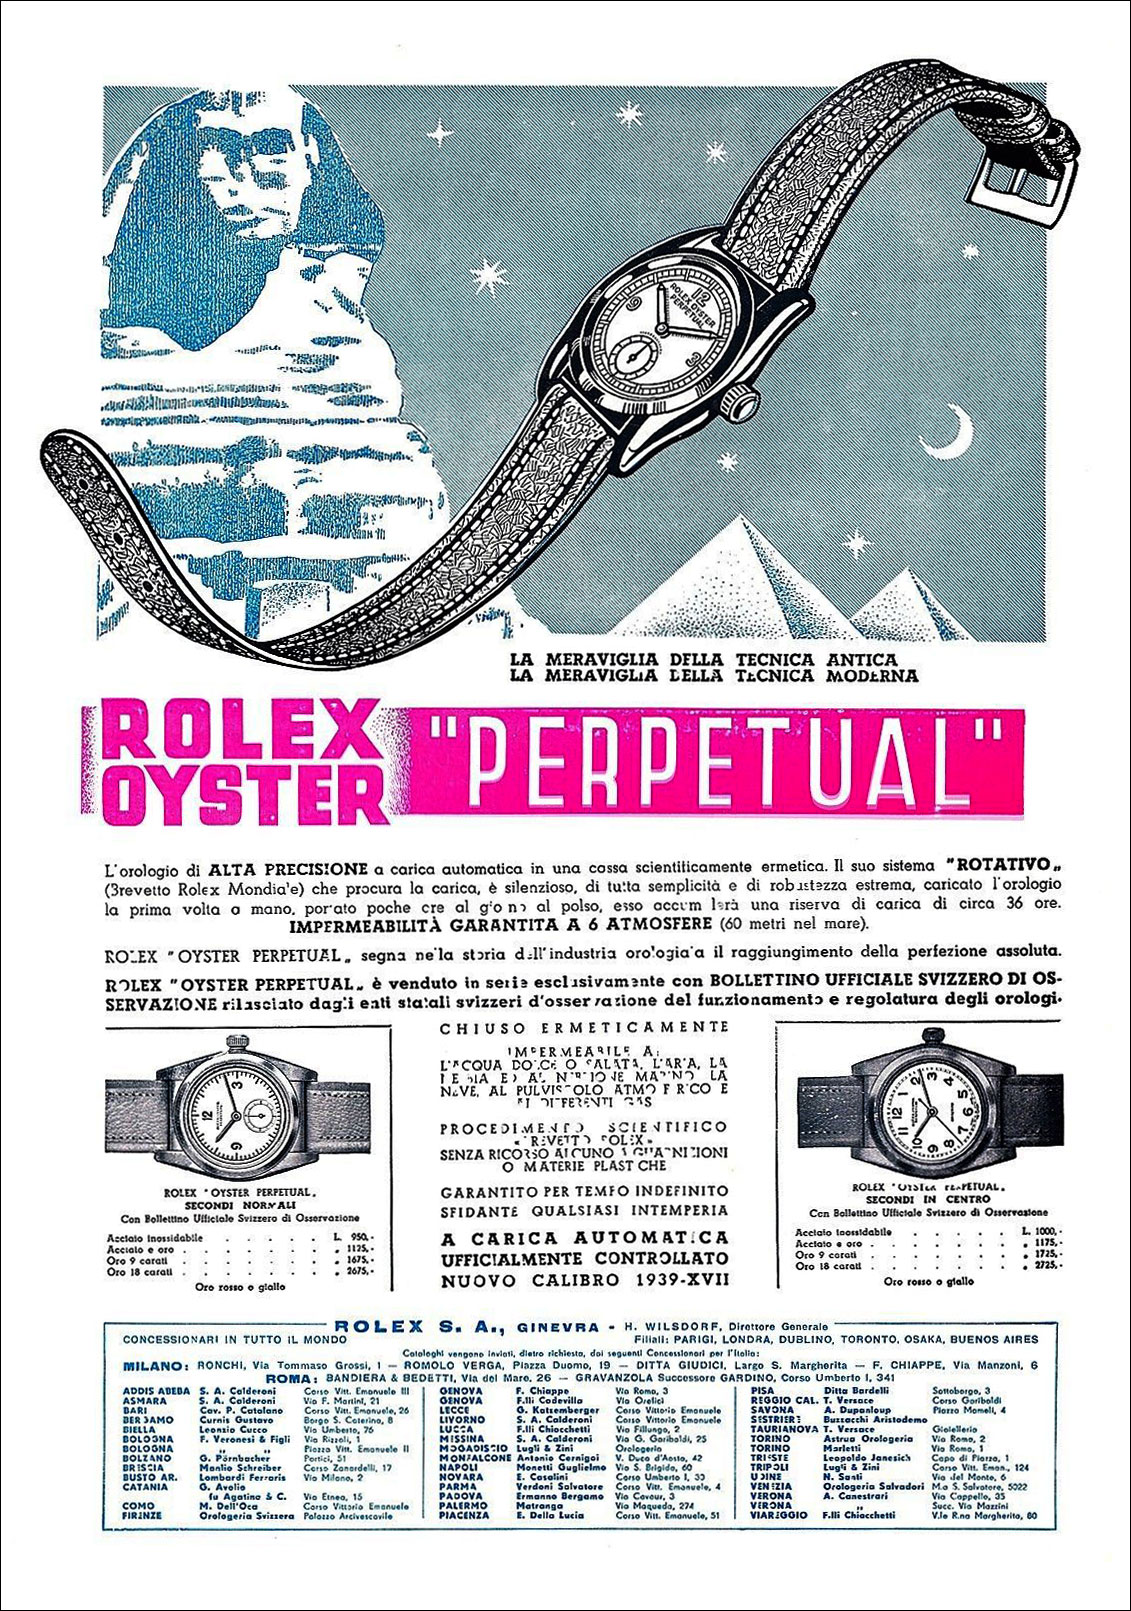 Rolex-Egyptian-Pyramid-ad.jpg